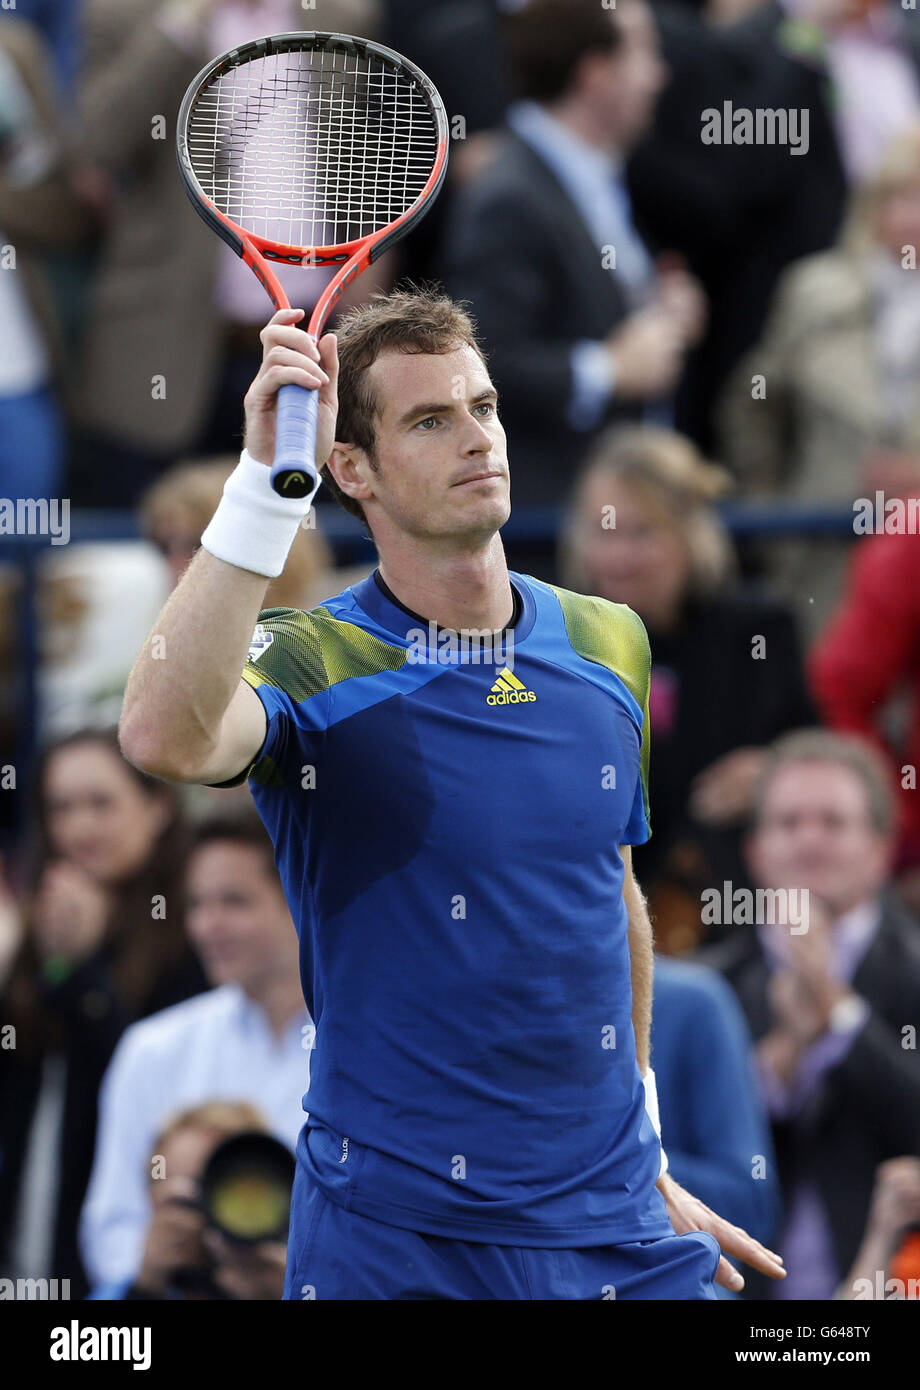 Andy Murray célèbre sa victoire contre Marinko Matoso aux Championnats AEGON au Queen's Club de Londres. Banque D'Images